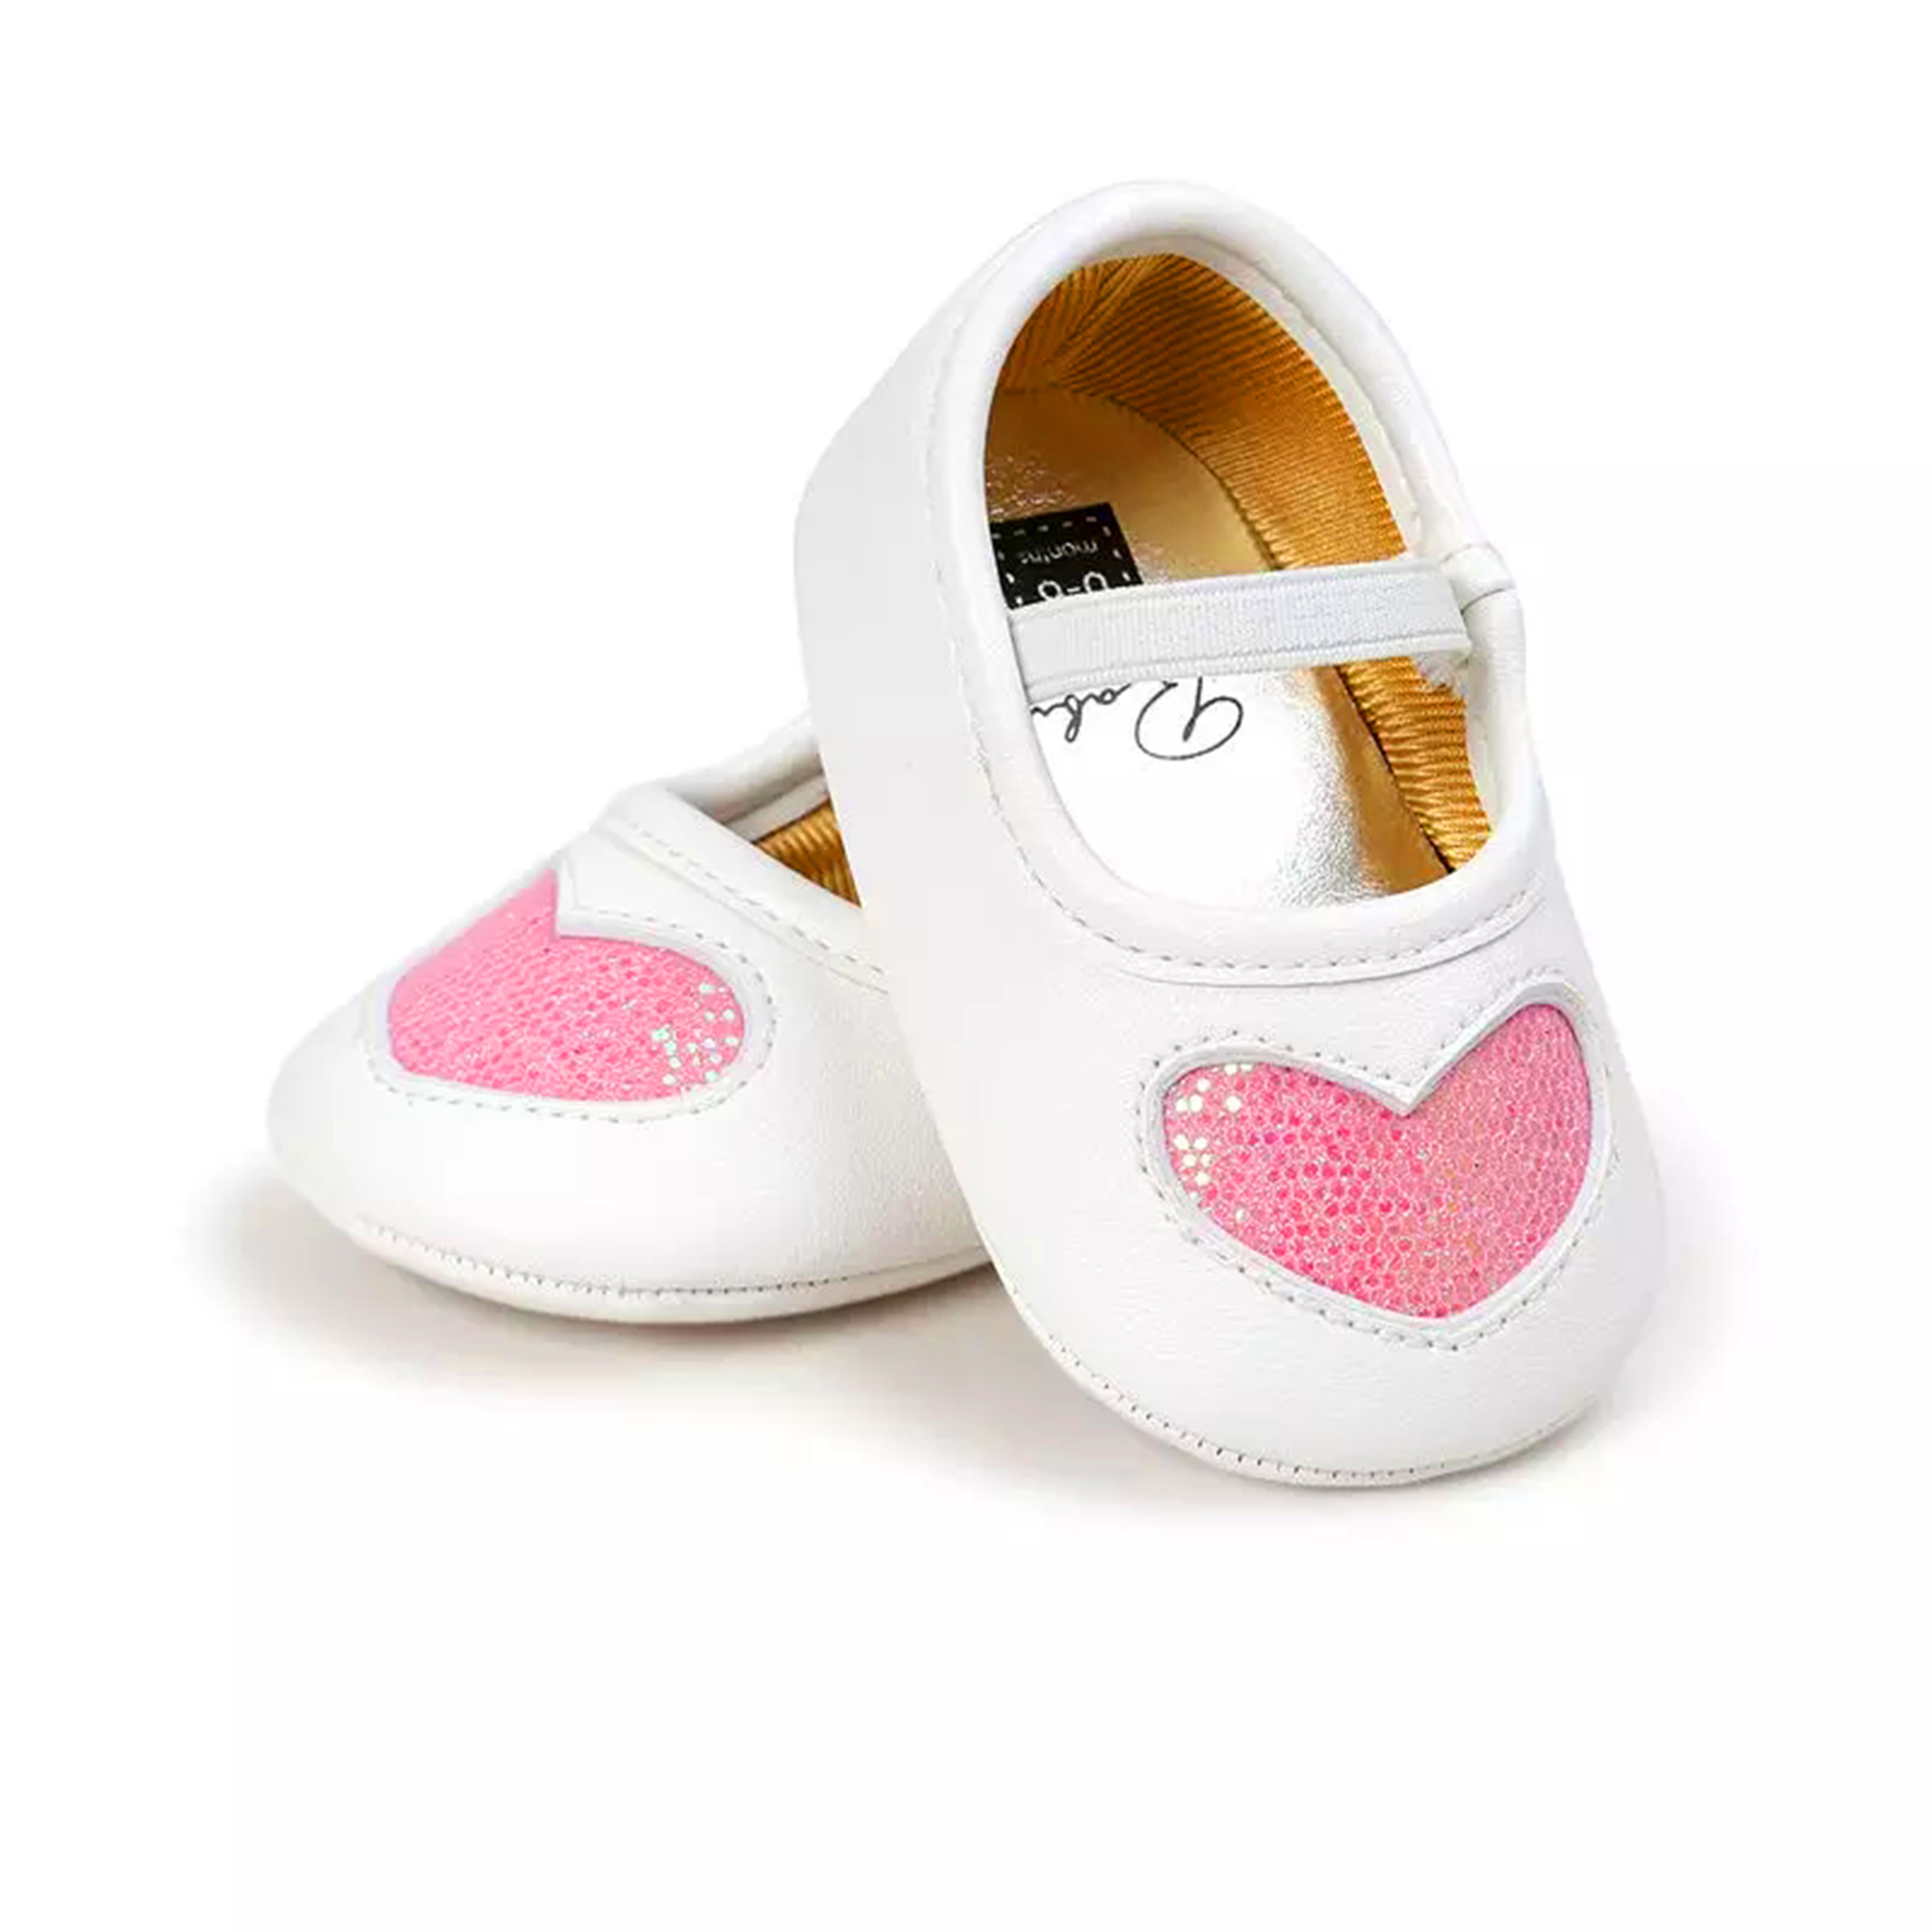 Giày tập đi cho bé gái từ 0 – 18 tháng tuổi trái tim nhũ xinh xắn BBShine – TD5